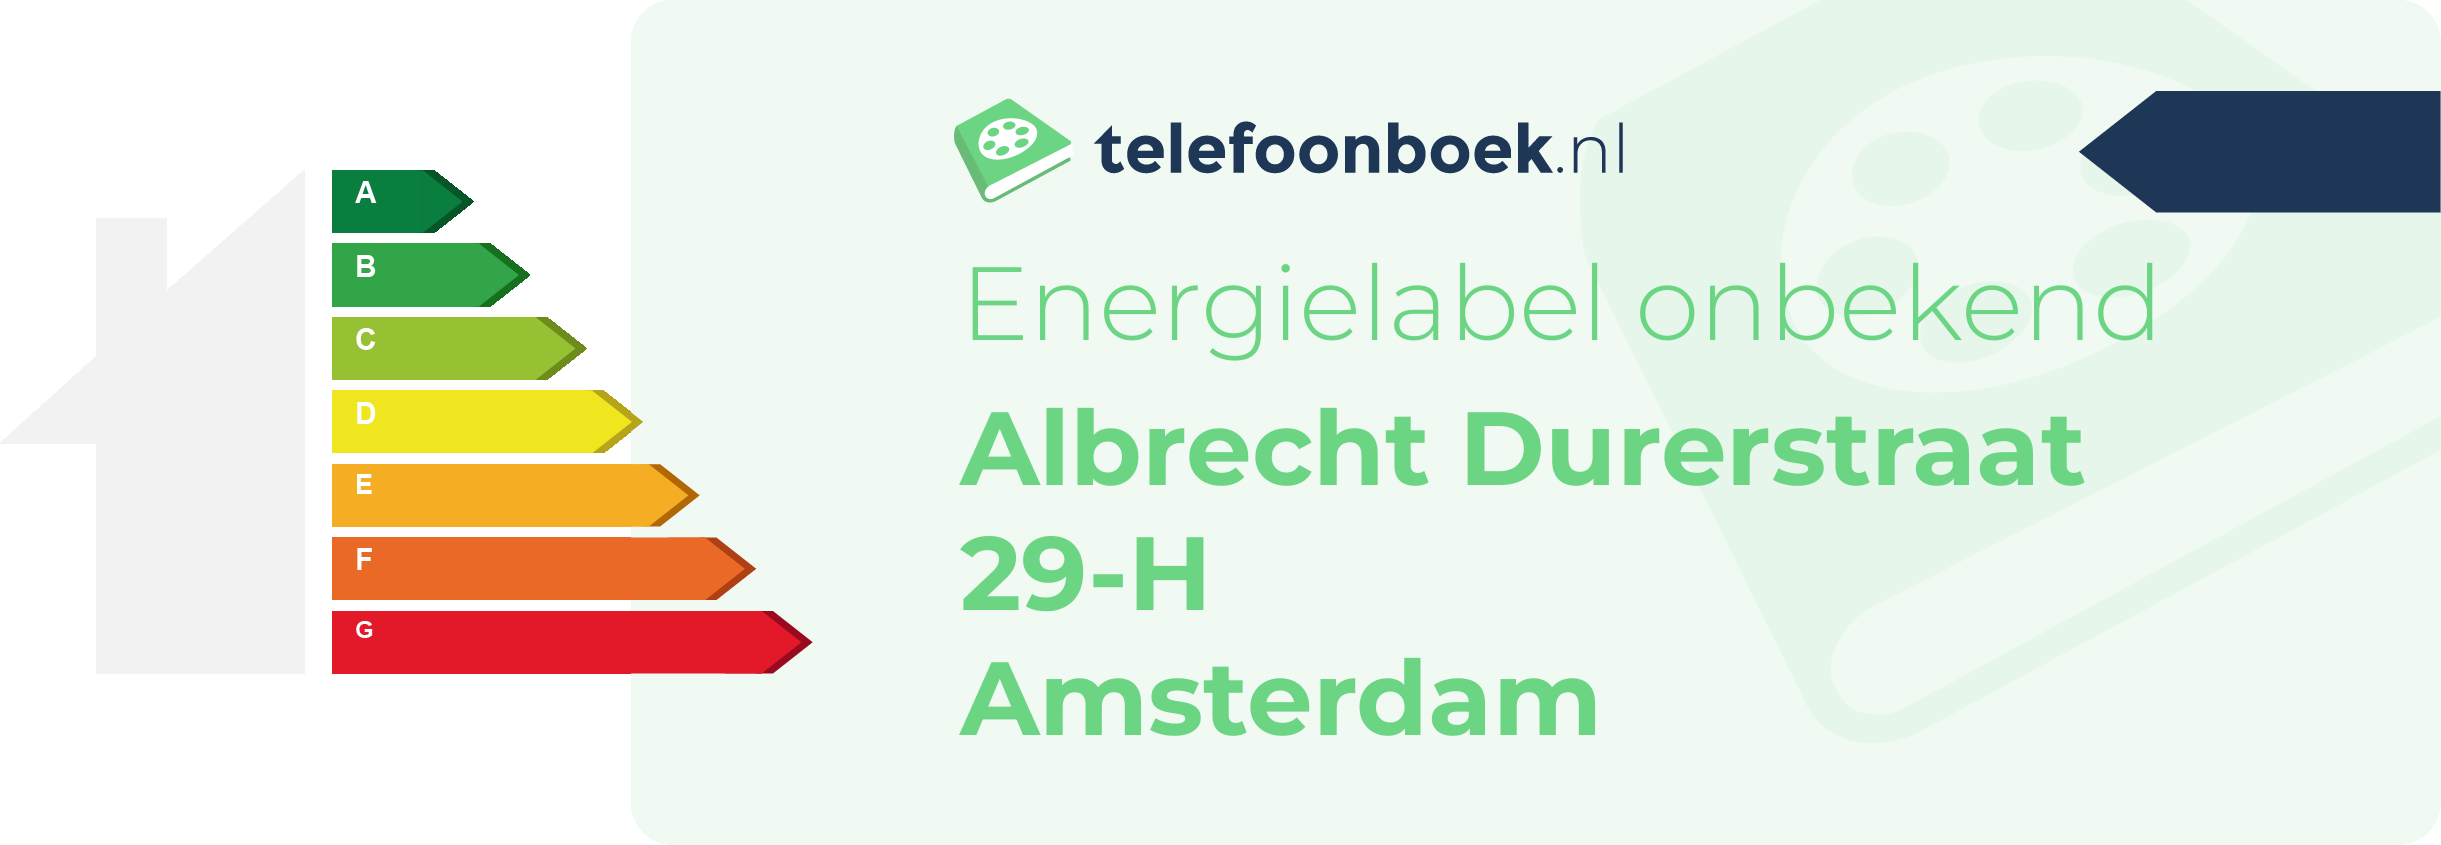 Energielabel Albrecht Durerstraat 29-H Amsterdam